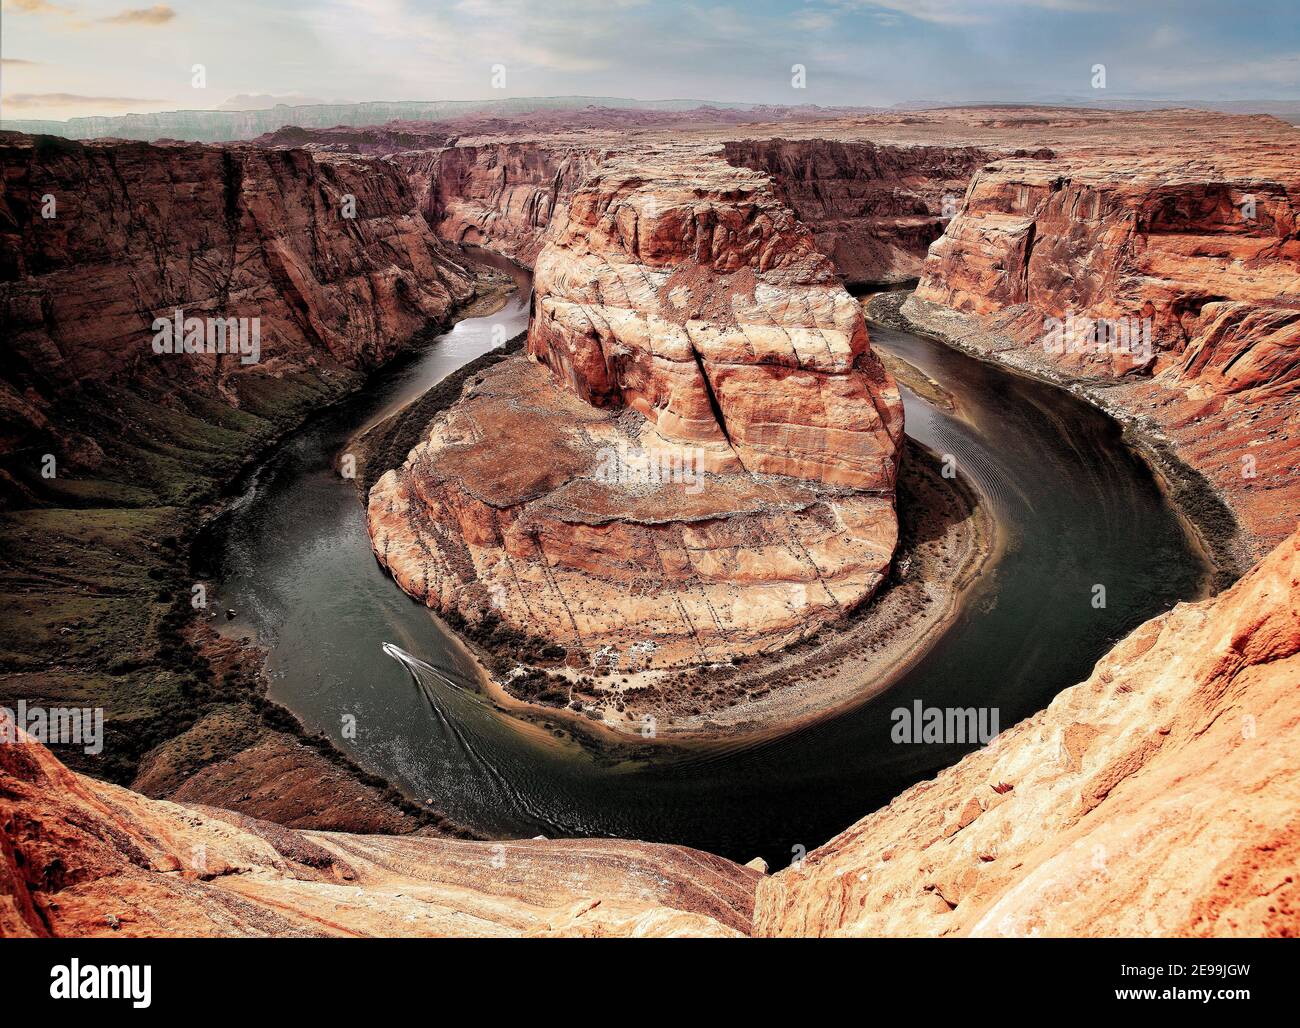 Un hors-bord se trouve sur le fleuve Colorado, à Horse Shoe Bend, près de page, en Arizona. Banque D'Images